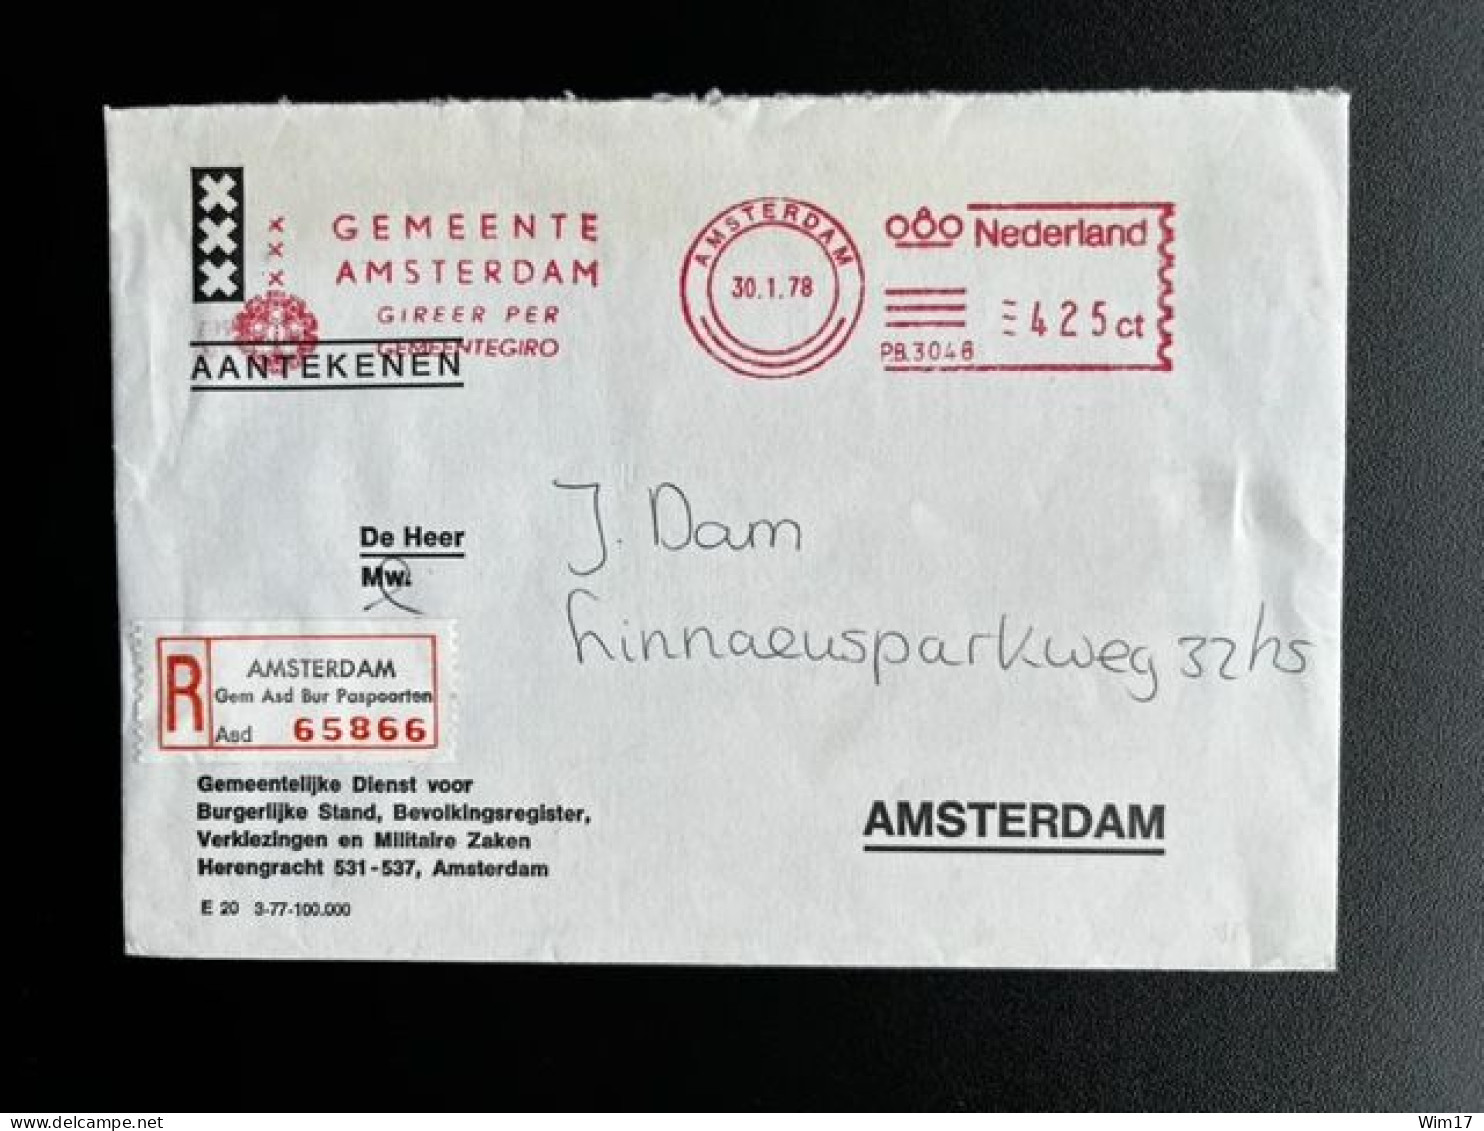 NETHERLANDS 1978 REGISTERED LETTER AMSTERDAM GEM ASD BUR PASPOORTEN 30-01-1978 NEDERLAND AANGETEKEND - Briefe U. Dokumente